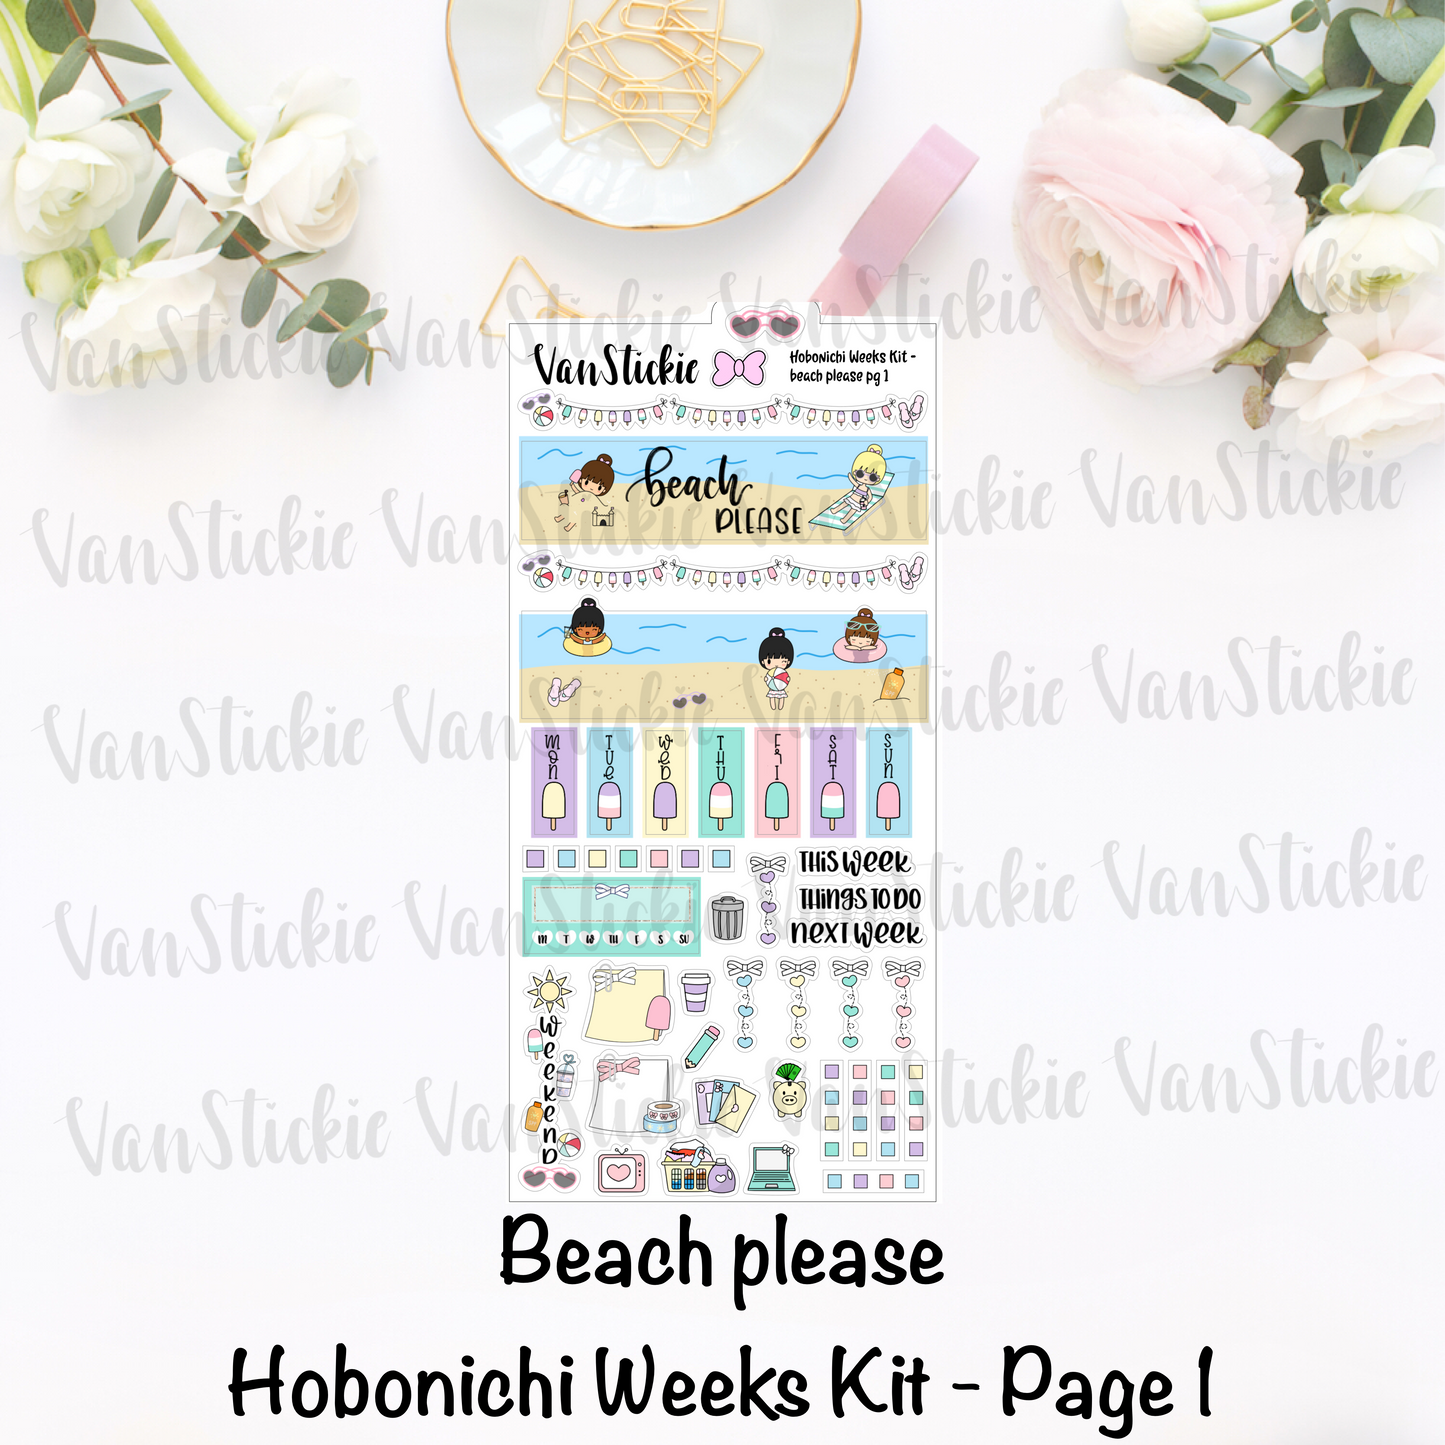 Hobonichi Weeks Kit - "Beach Please"